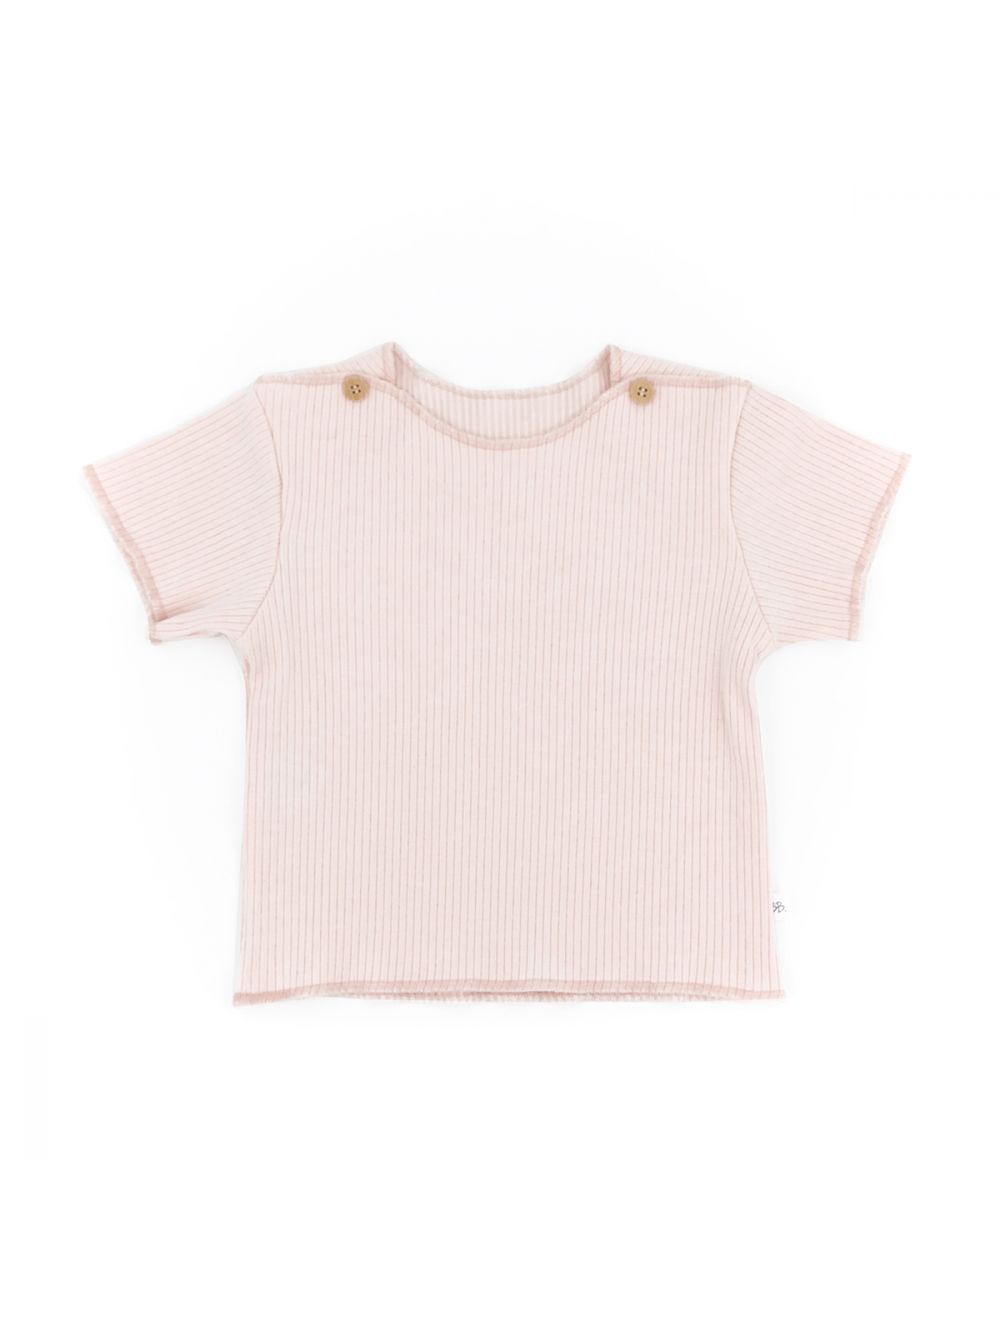 Baby T-Shirt von Bamboom rosa aus Bio-Bambus-Viskose und Bio-Baumwolle